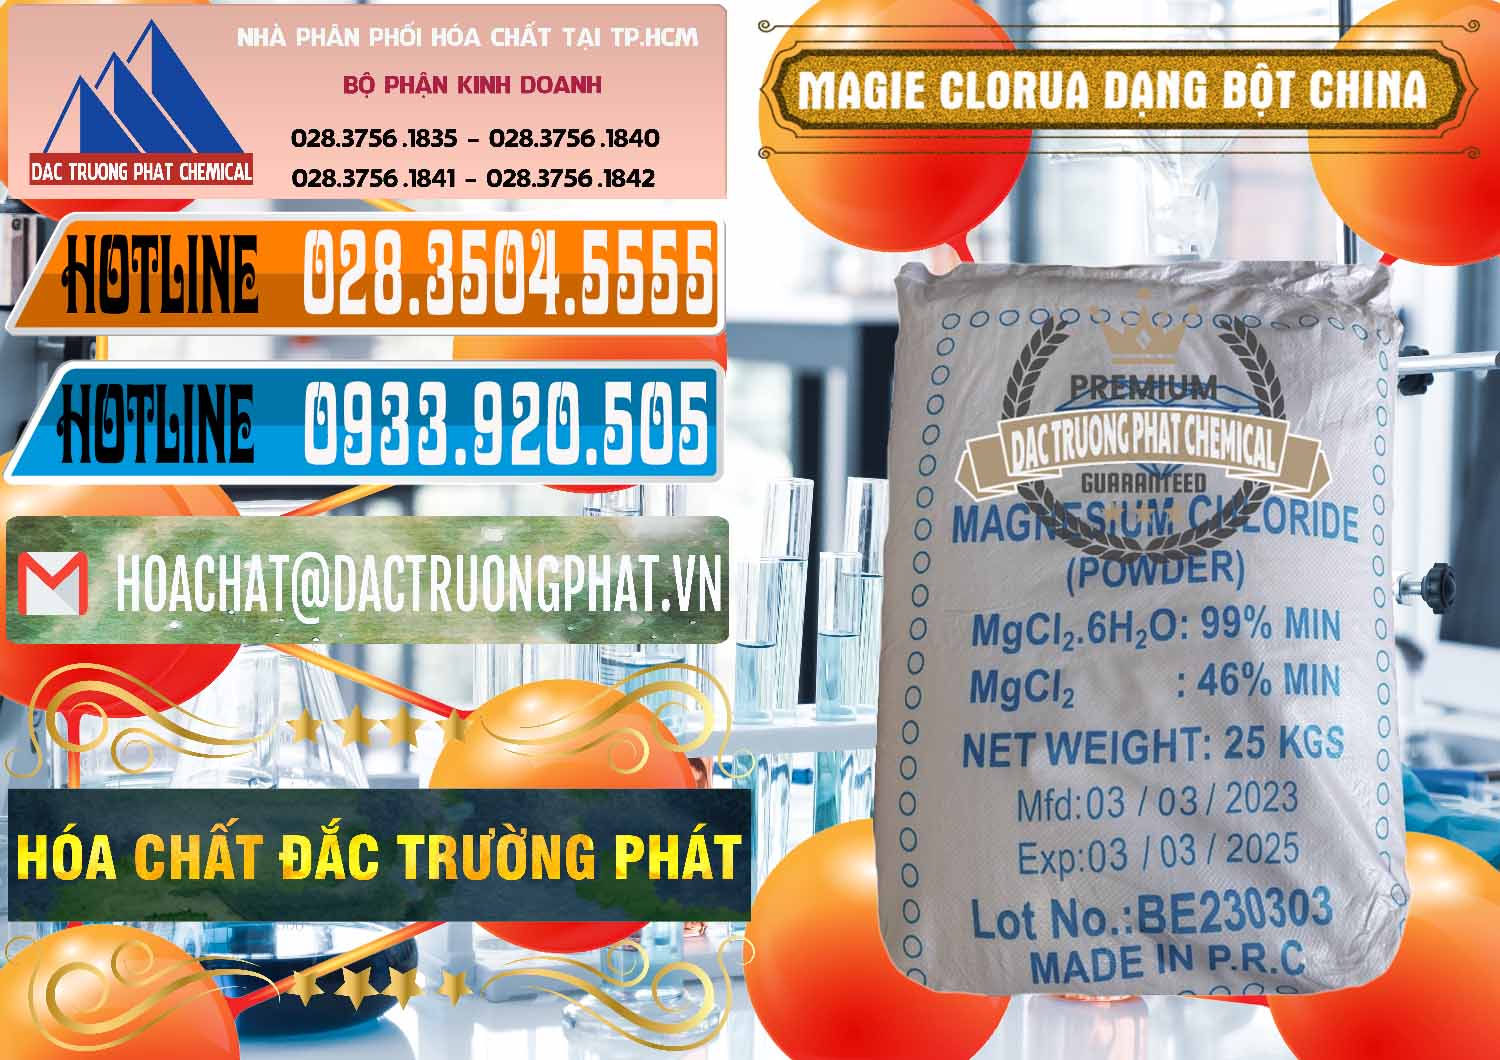 Đơn vị chuyên kinh doanh ( bán ) Magie Clorua – MGCL2 96% Dạng Bột Logo Kim Cương Trung Quốc China - 0387 - Cung cấp ( phân phối ) hóa chất tại TP.HCM - stmp.net